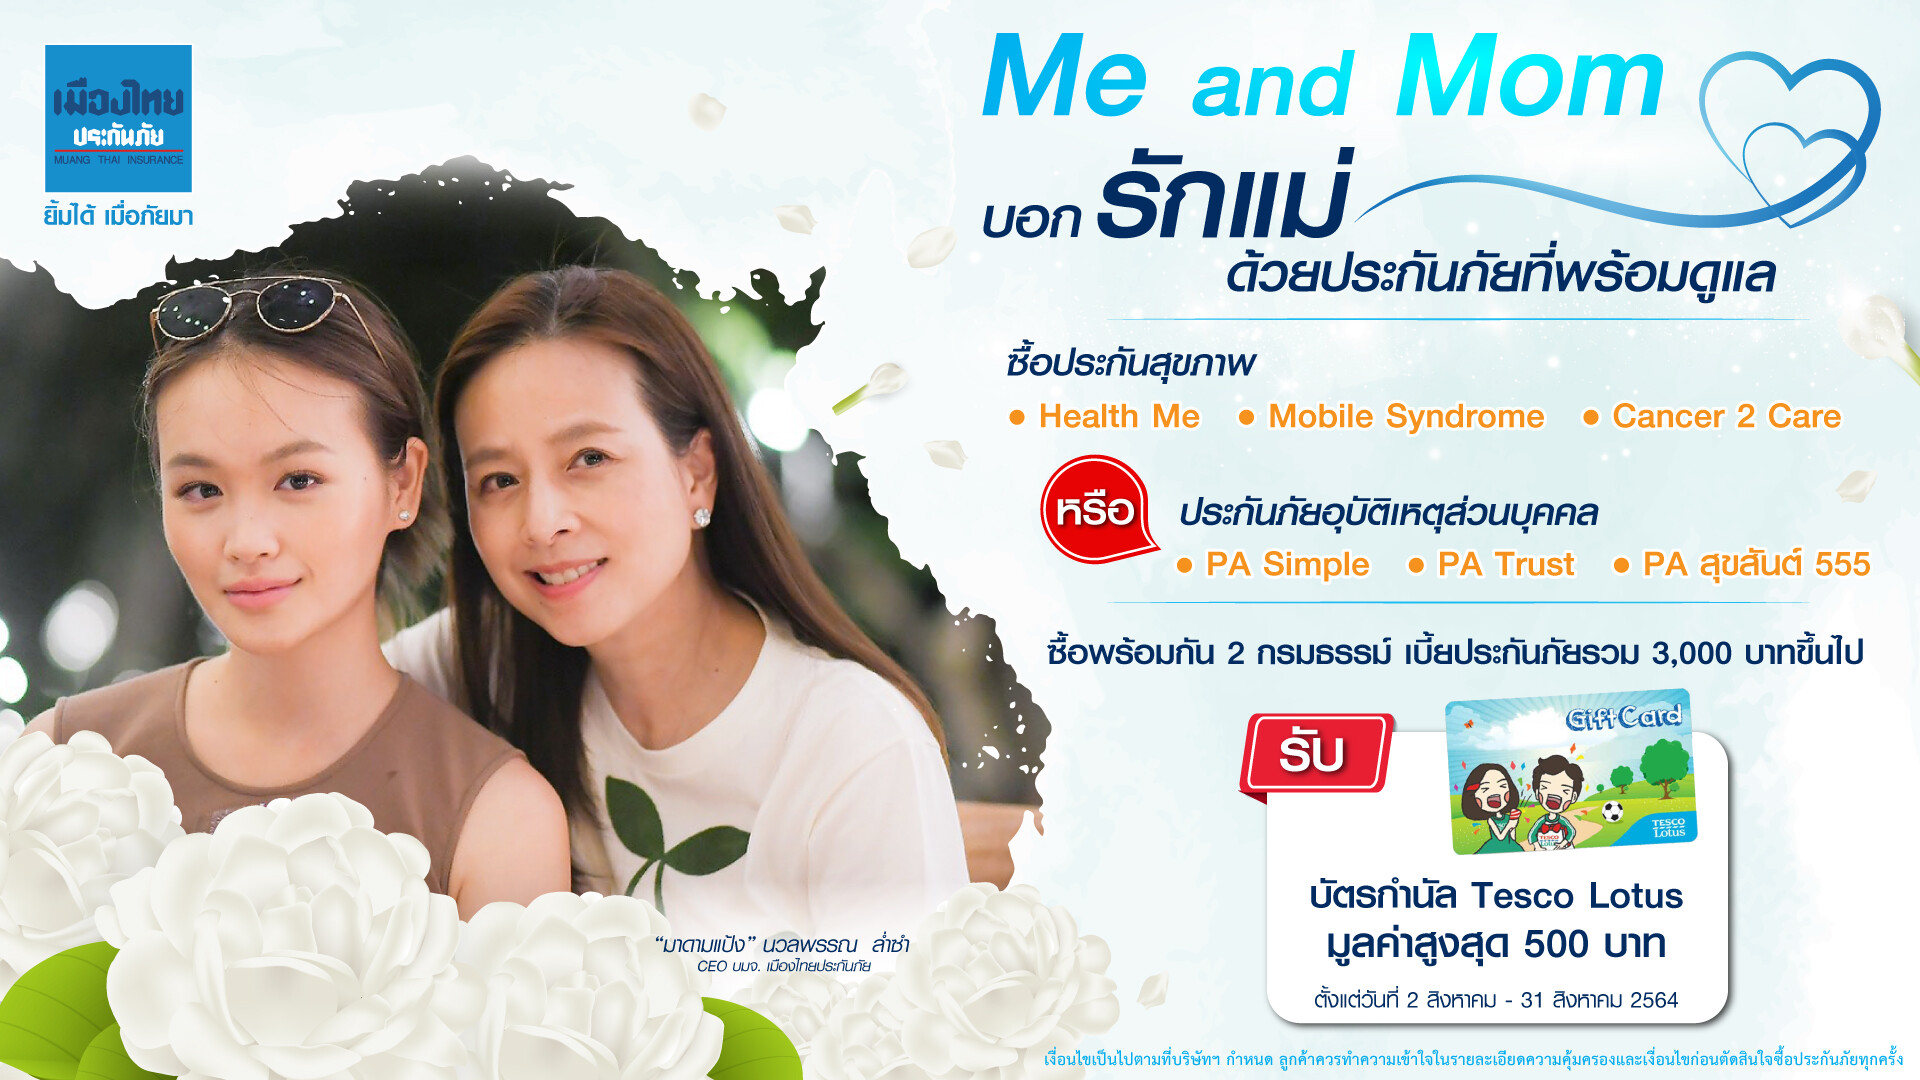 เมืองไทยประกันภัย จัดโปร Me&Mom ชวนดูแลสุขภาพแบบแพ็คคู่ในเดือนสิงหาคม บอกรักแม่ด้วยประกันภัยที่พร้อมดูแล พร้อมเผยประกันมะเร็ง Cancer 2 Care ตัวใหม่